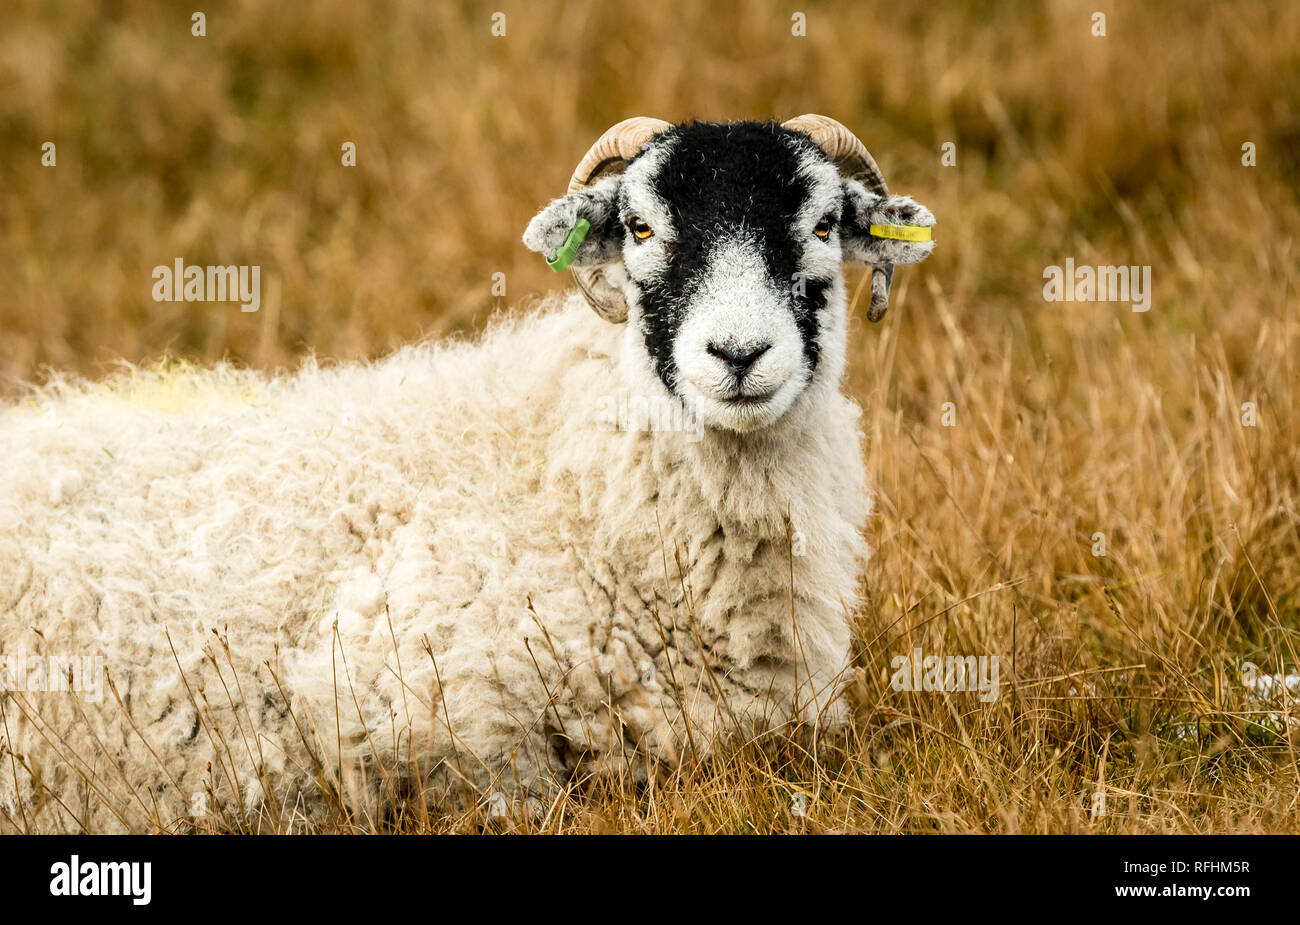 Brebis Swaledale en hiver. Landes l'agriculture de montagne dans les vallées du Yorkshire, England, UK. Moutons Swaledale sont une race de moutons en Amérique du Yorks Banque D'Images